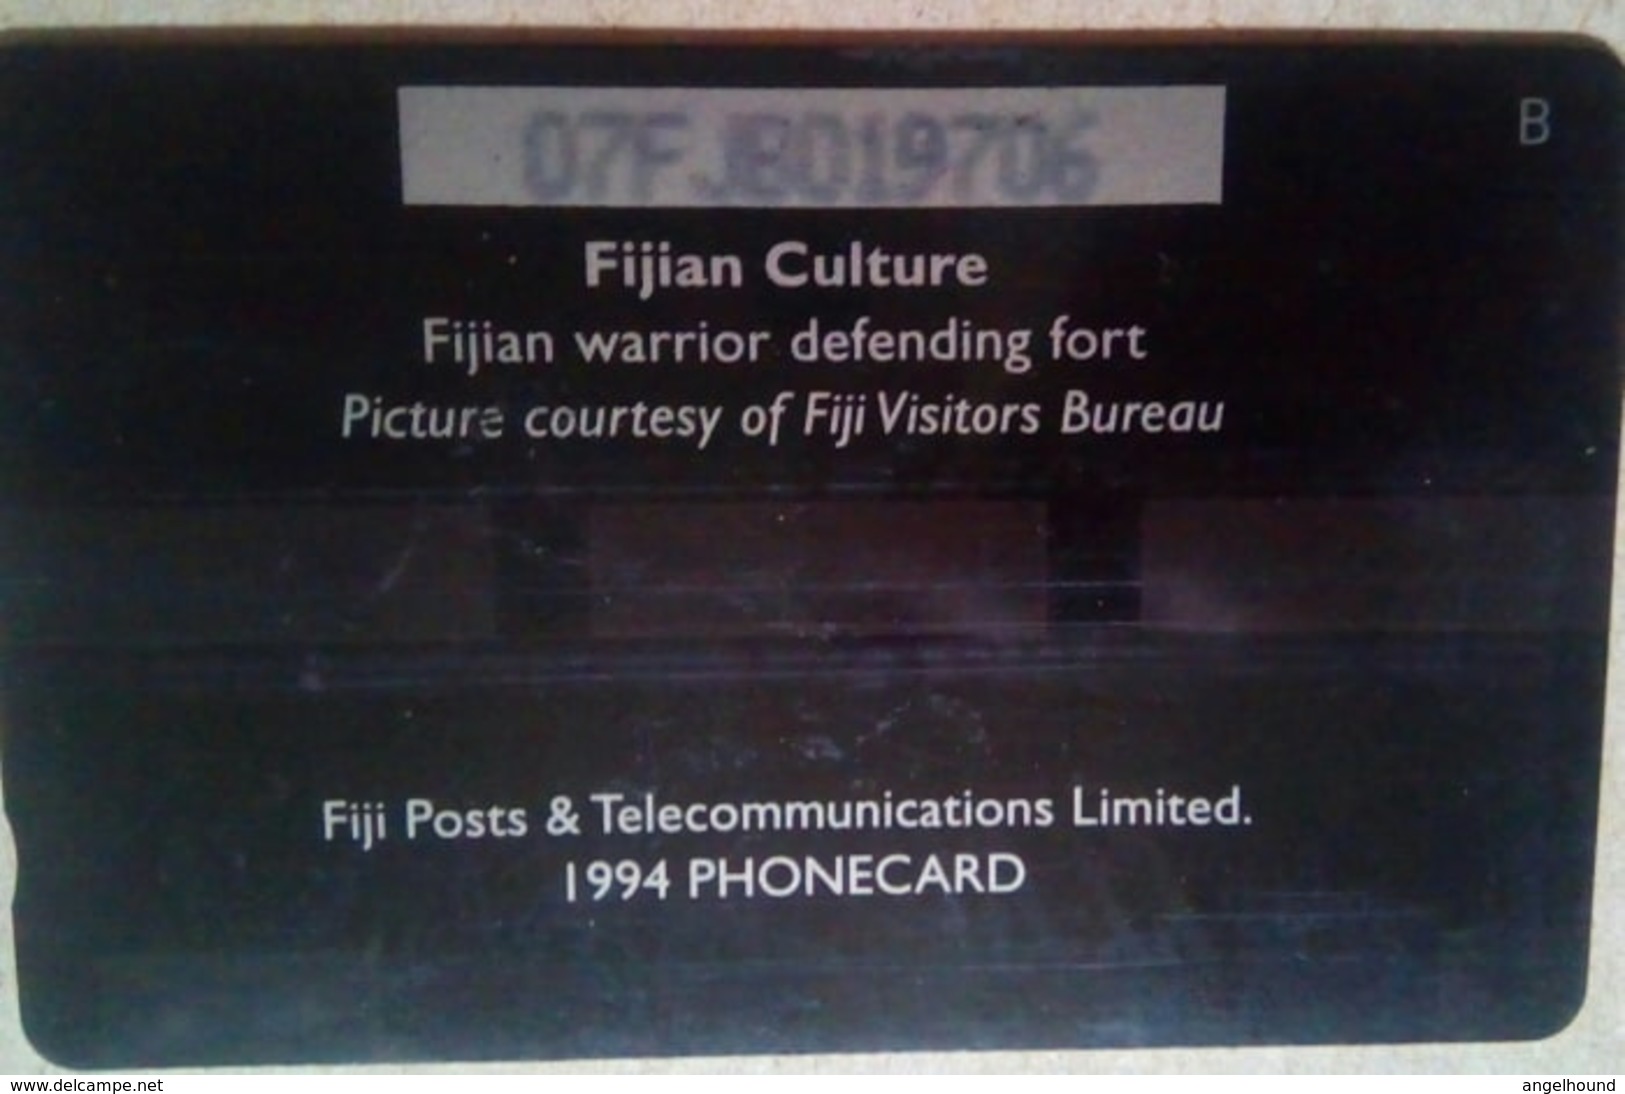 07FJB Fiji Culture $3 - Fiji